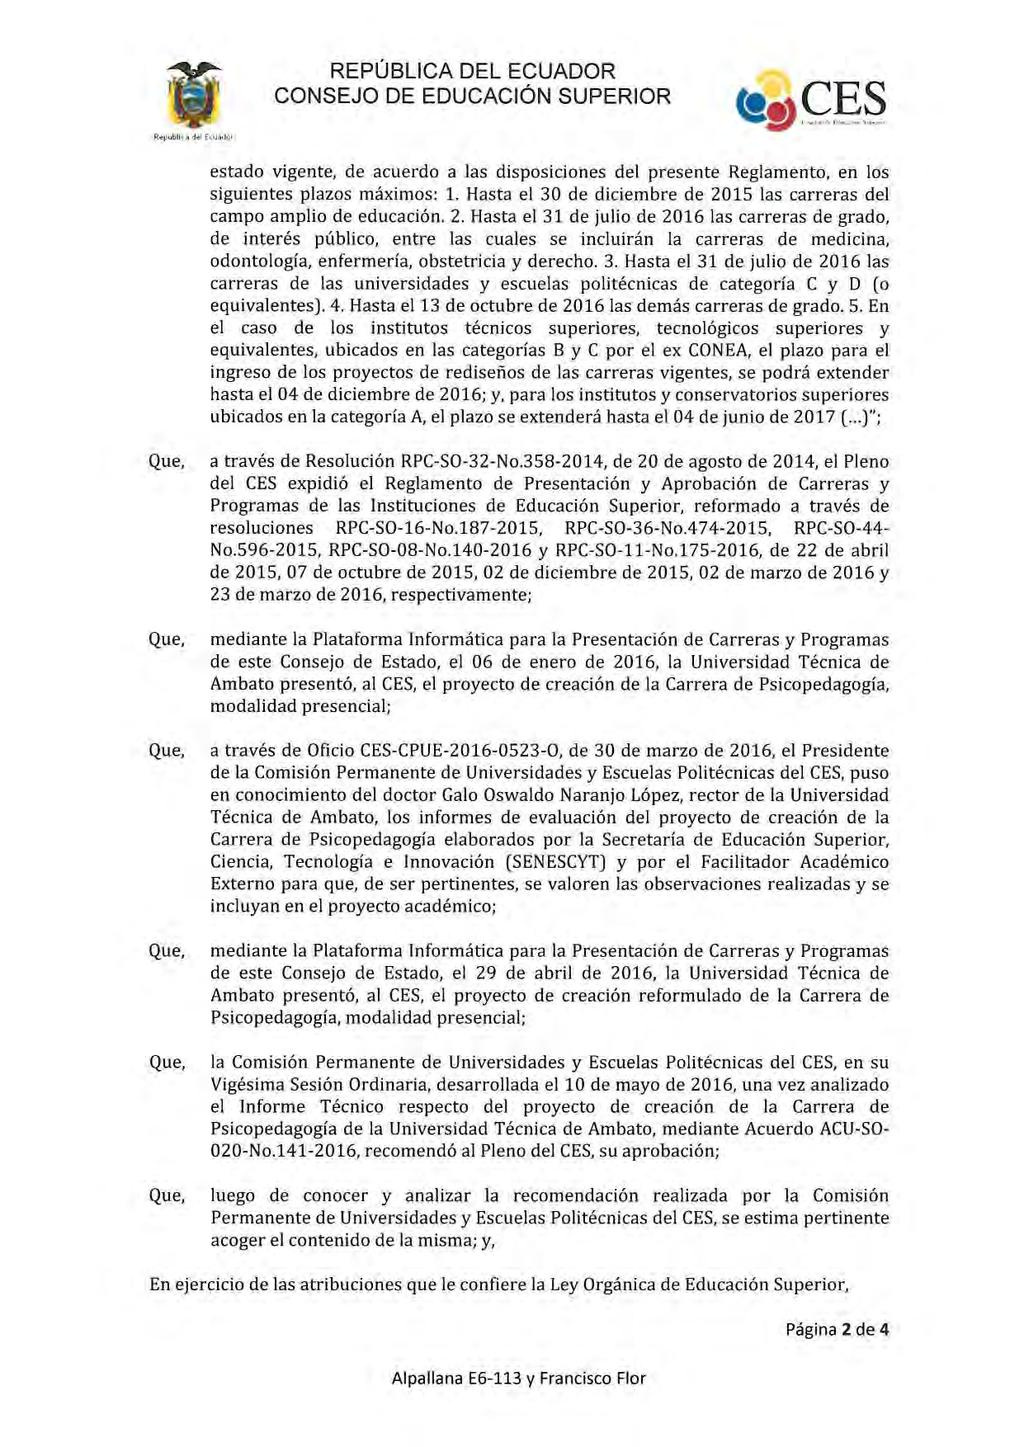 REPÚBLICA DEL ECUADOR CONSEJO DE EDUCACiÓN SUPERIOR estado vigente, de acuerdo a las disposiciones del presente Reglamento, en los siguientes plazos máximos: 1.